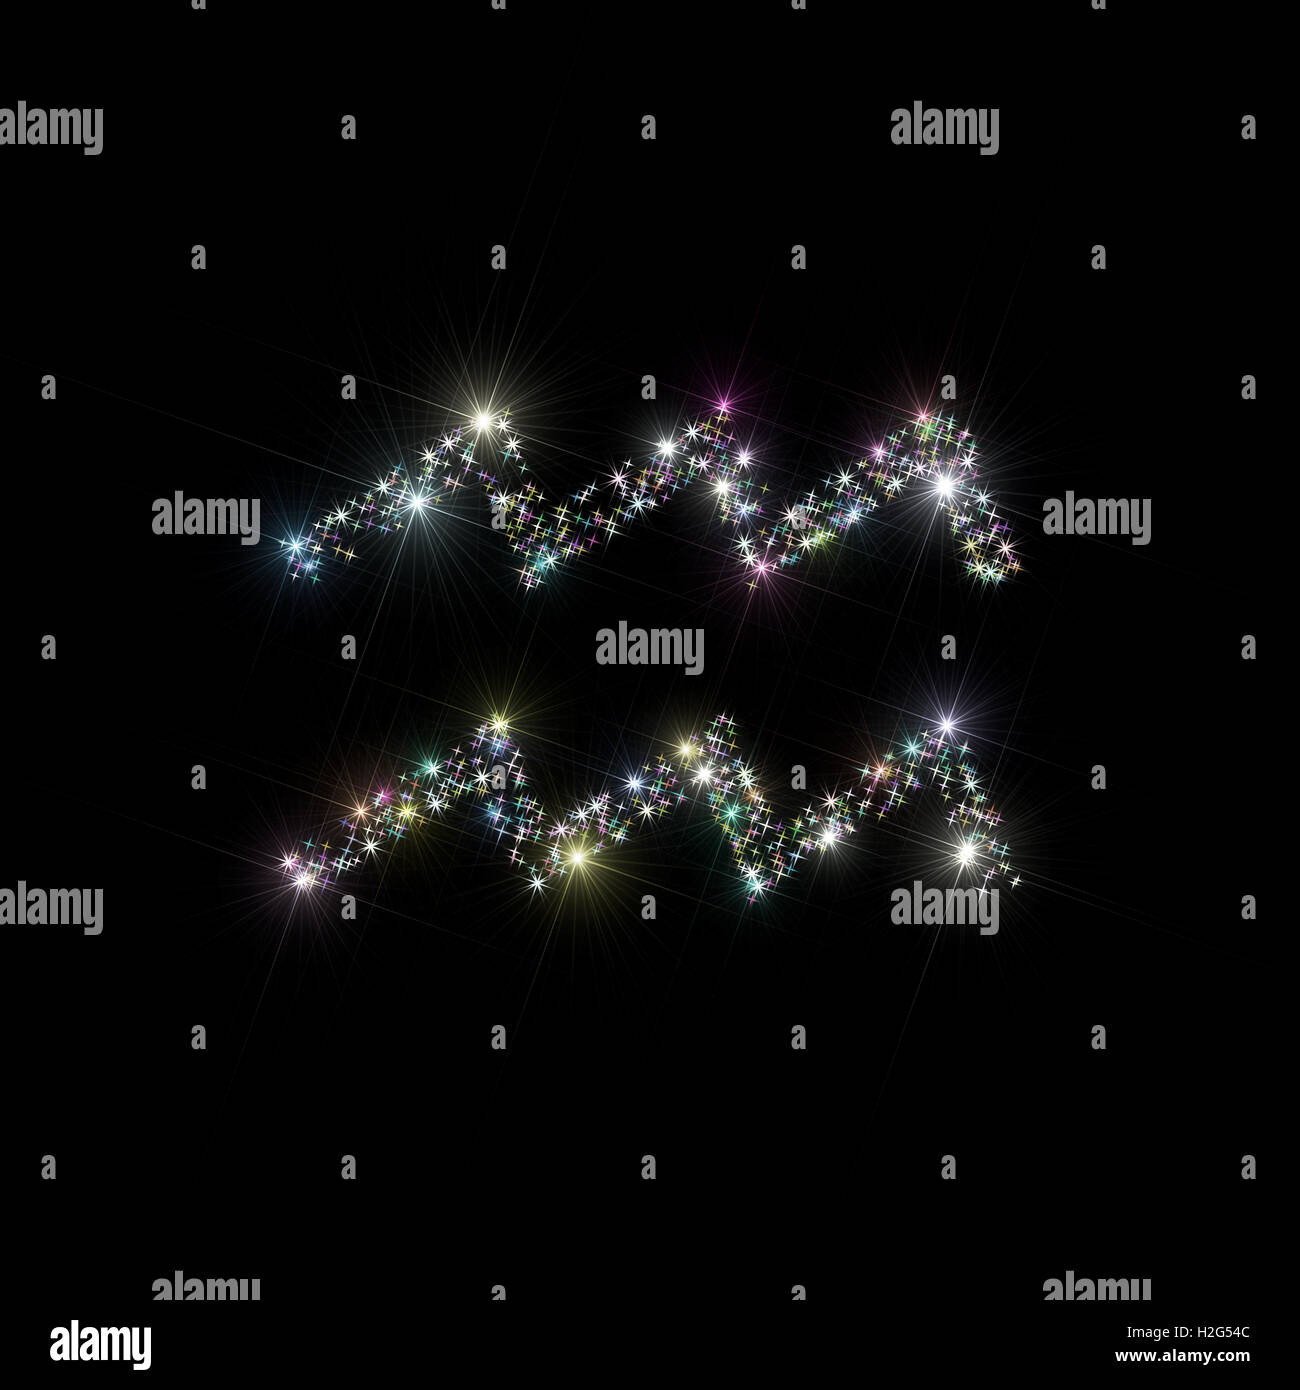 Sfondo astratto astronomia / illustrazione di astrologia che rappresentano il segno zodiacale / simbolo per Aquarius costellazione fatta di stelle Foto Stock